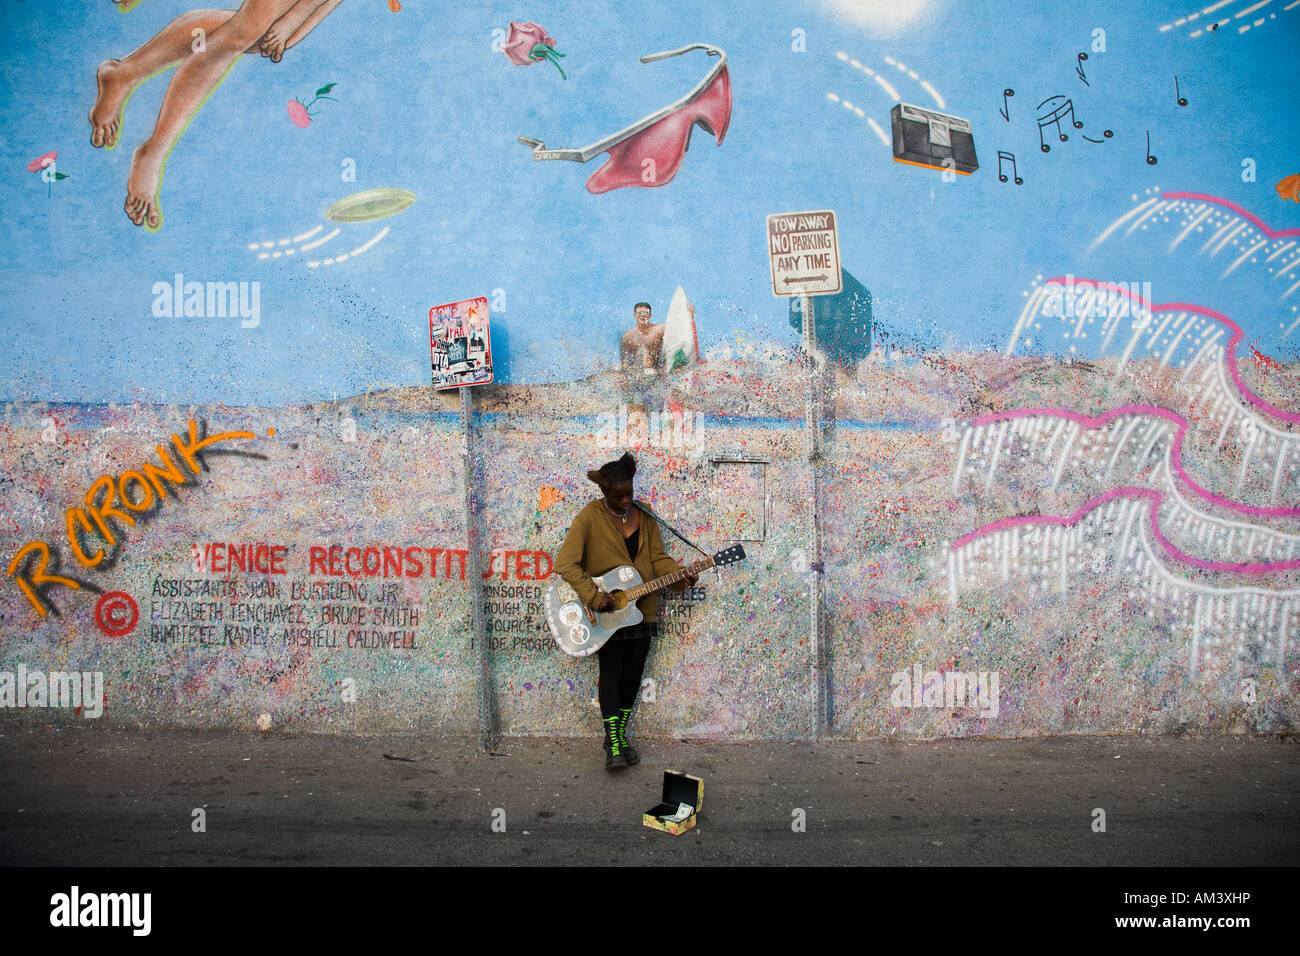 Joueur de guitare, Venice Beach Los Angeles County California Etats-Unis d'Amérique (peinture murale par R Cronck) Banque D'Images